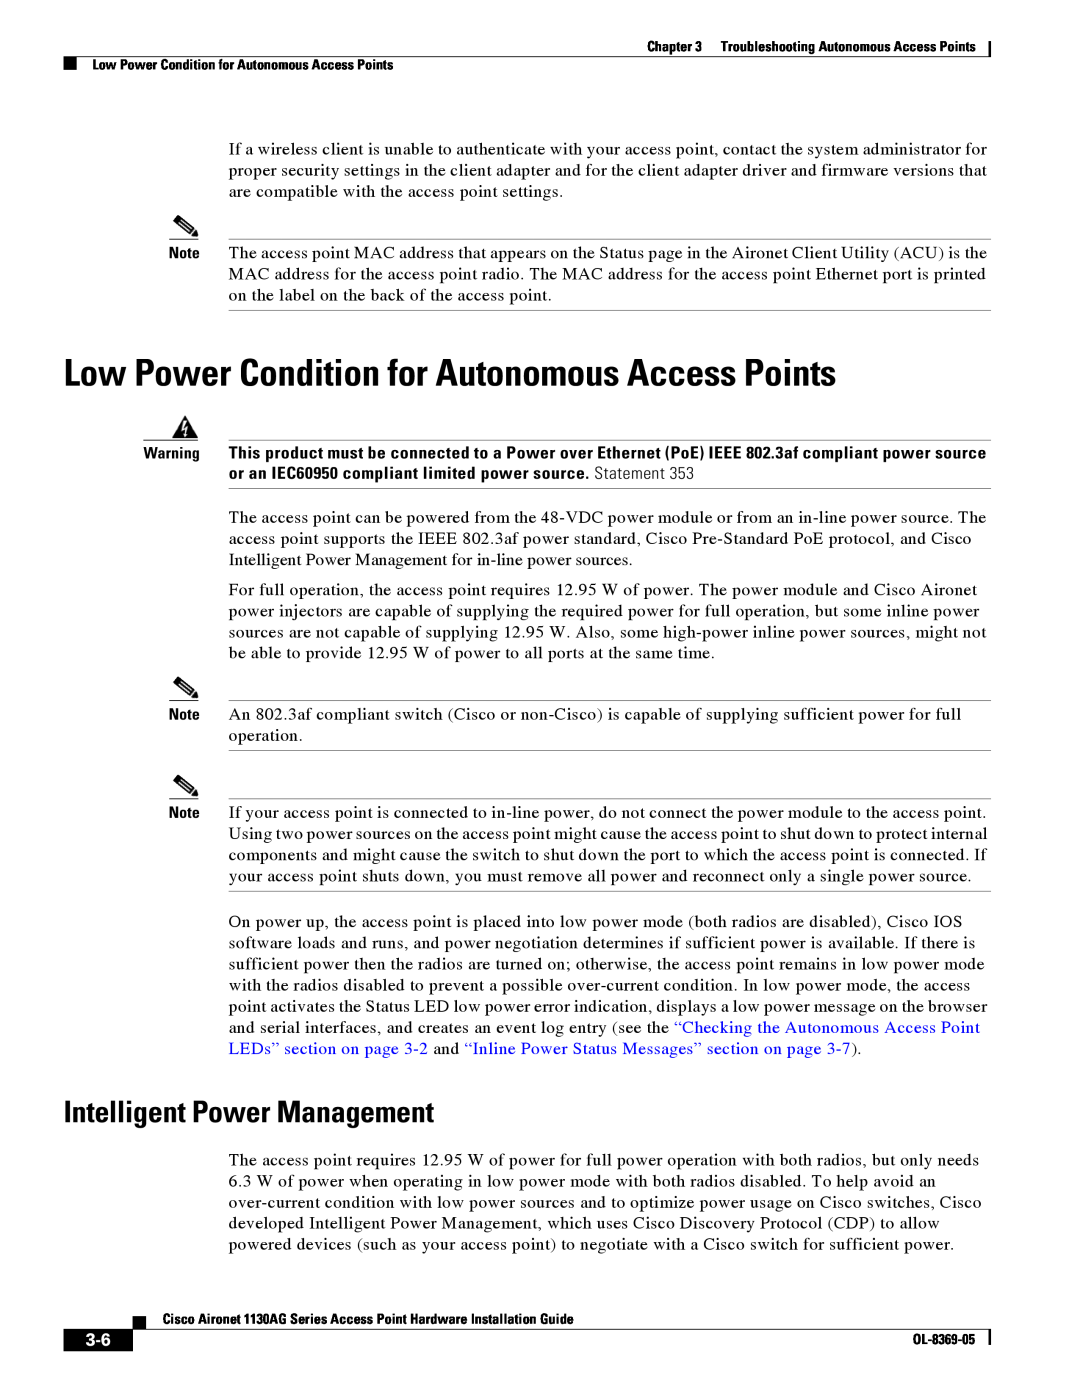 Cisco Systems 1130AG manual Low Power Condition for Autonomous Access Points, Intelligent Power Management 